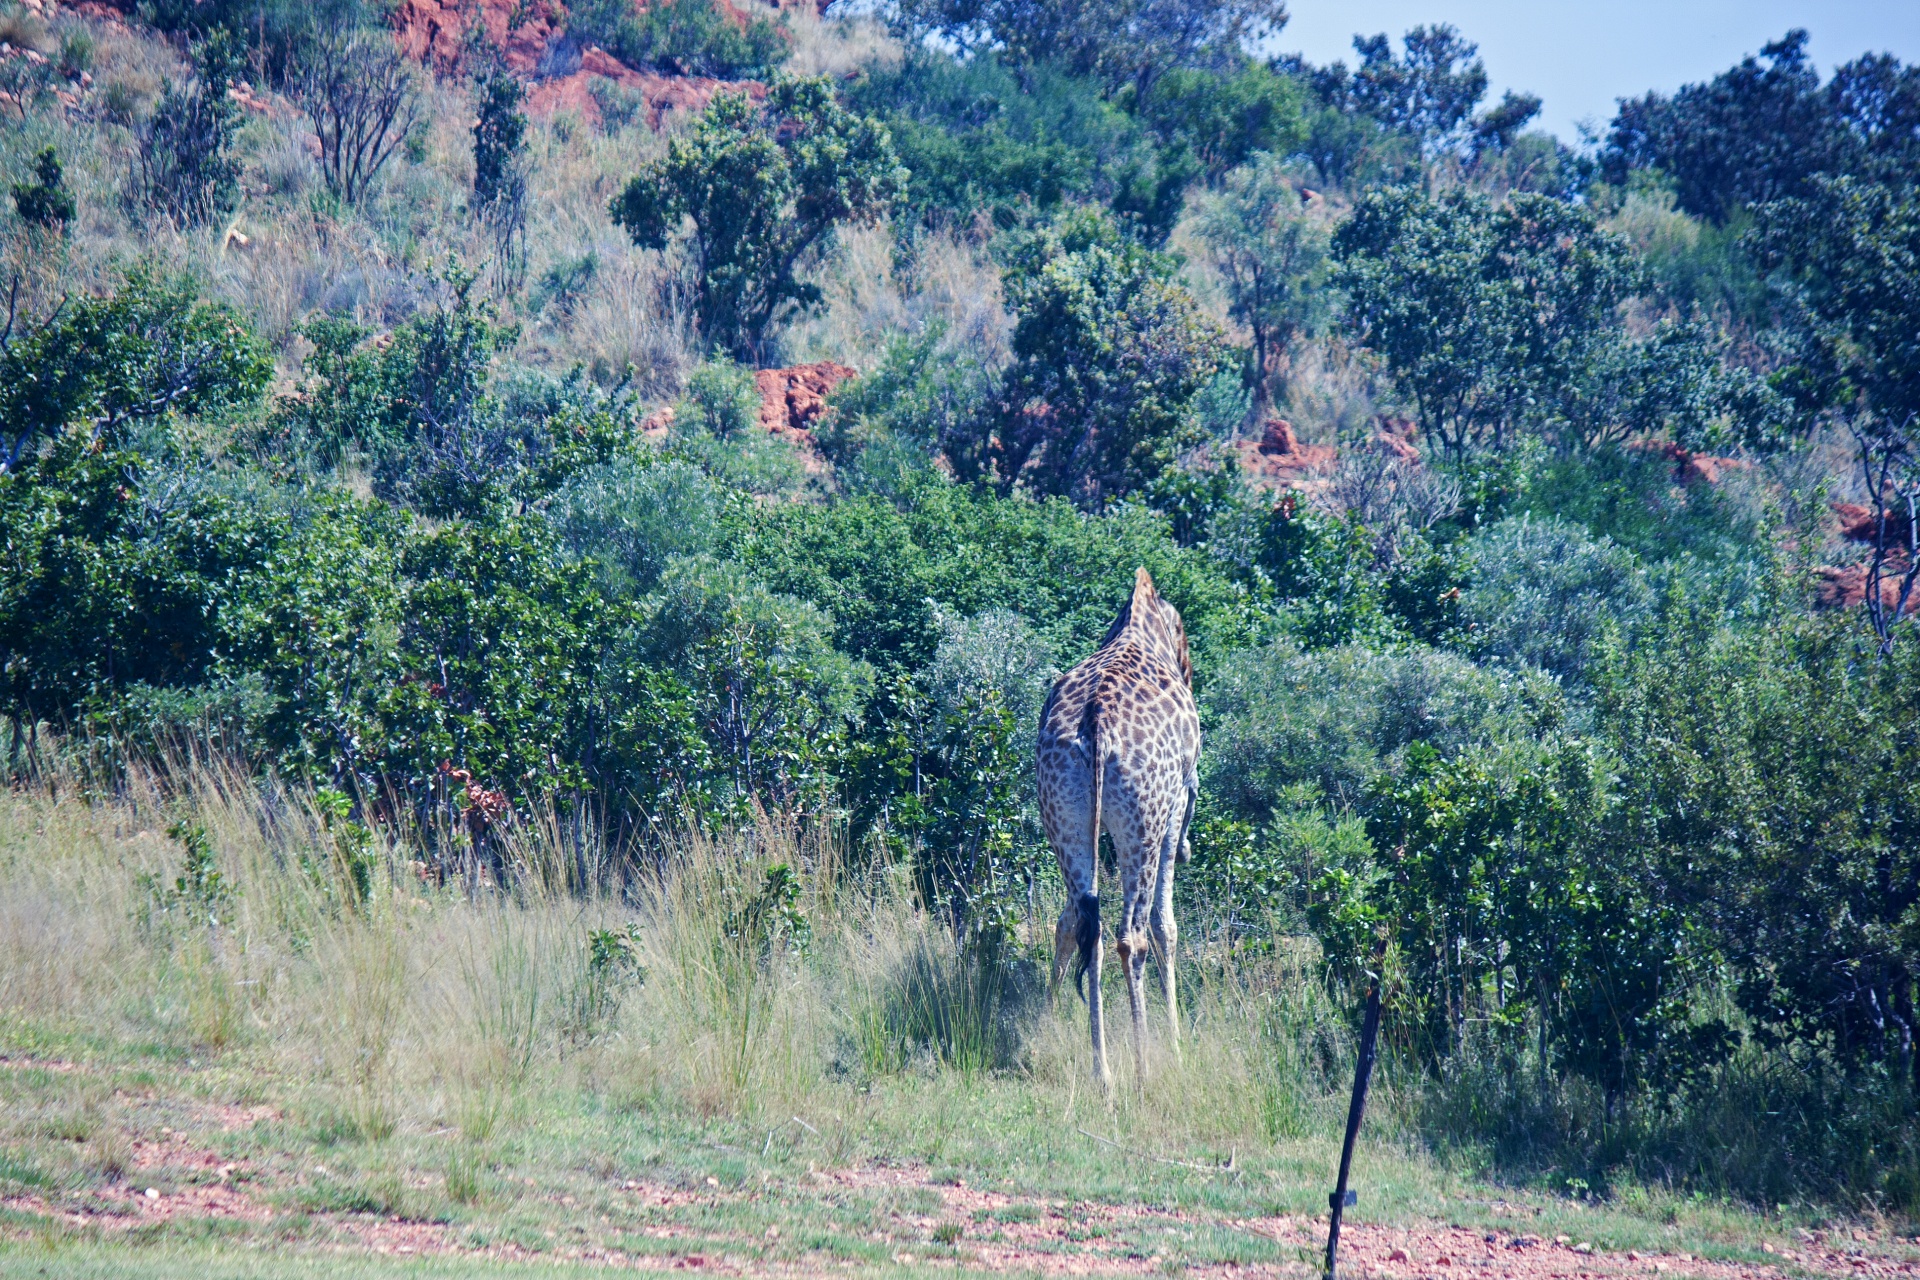 Giraf vanaf de achterkant